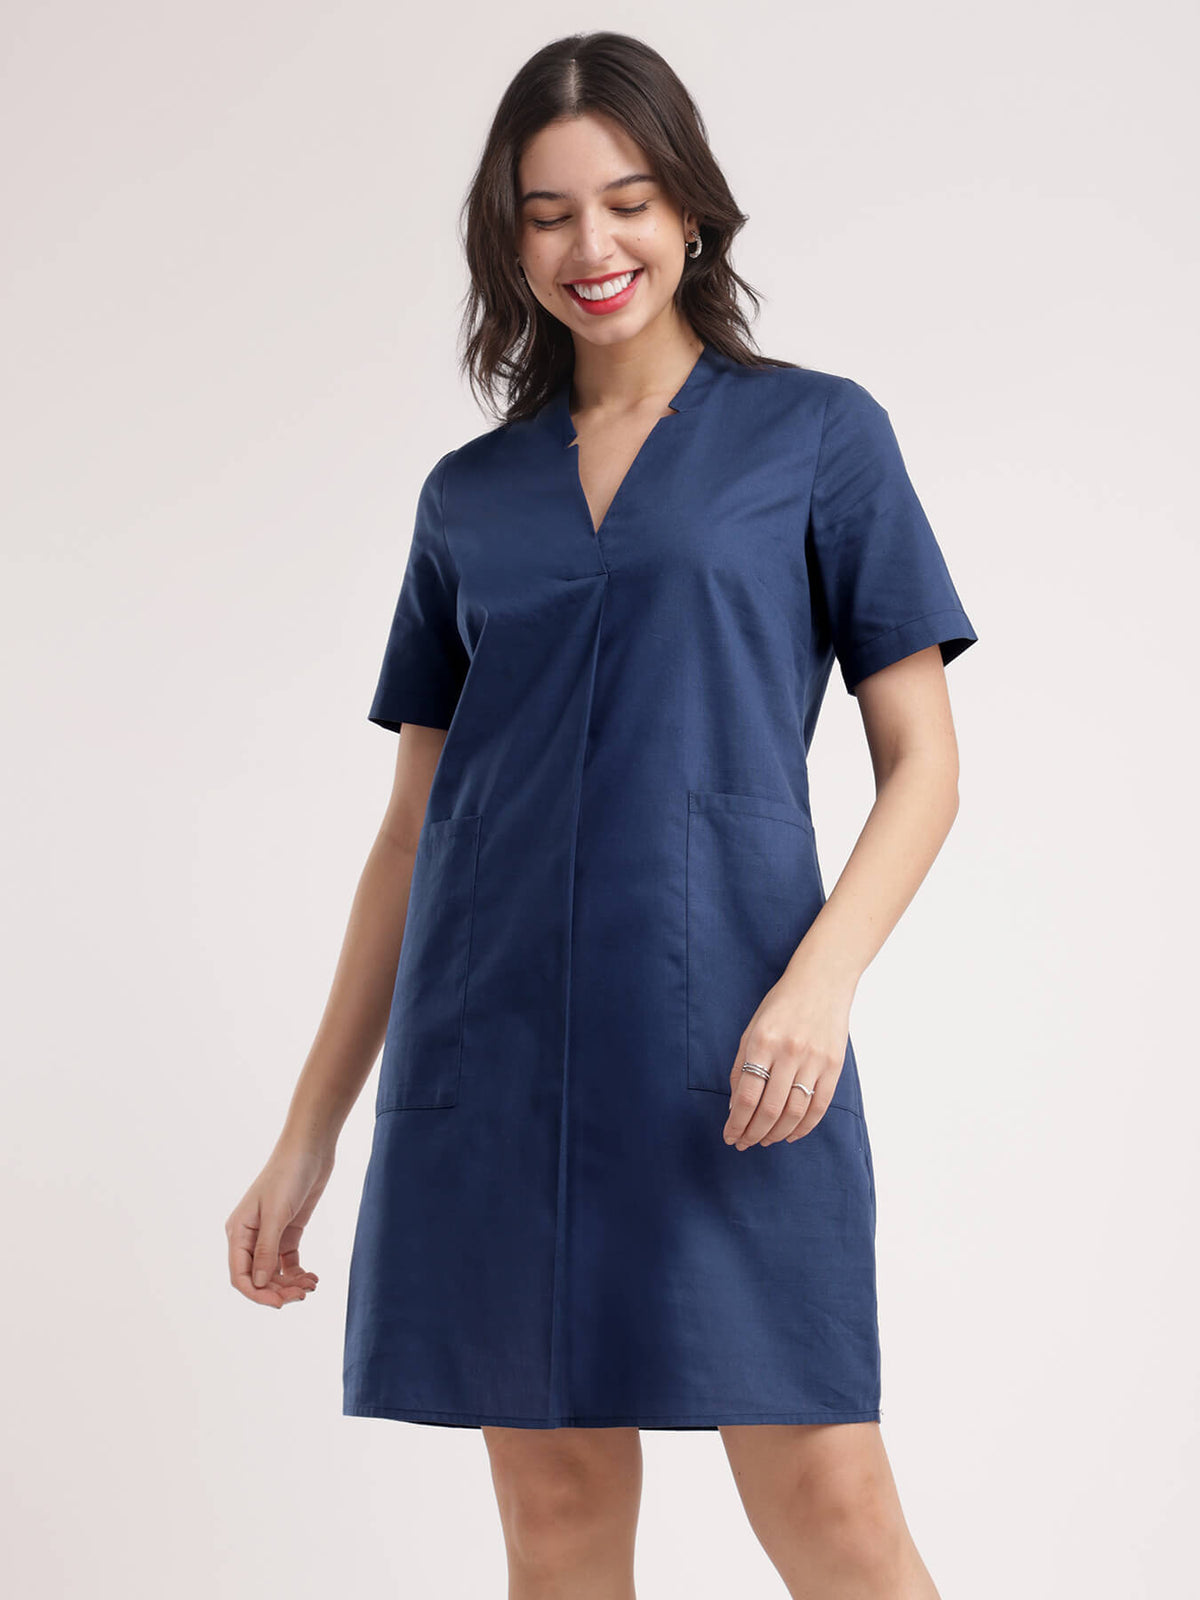 Linen Shift Dress - Navy Blue